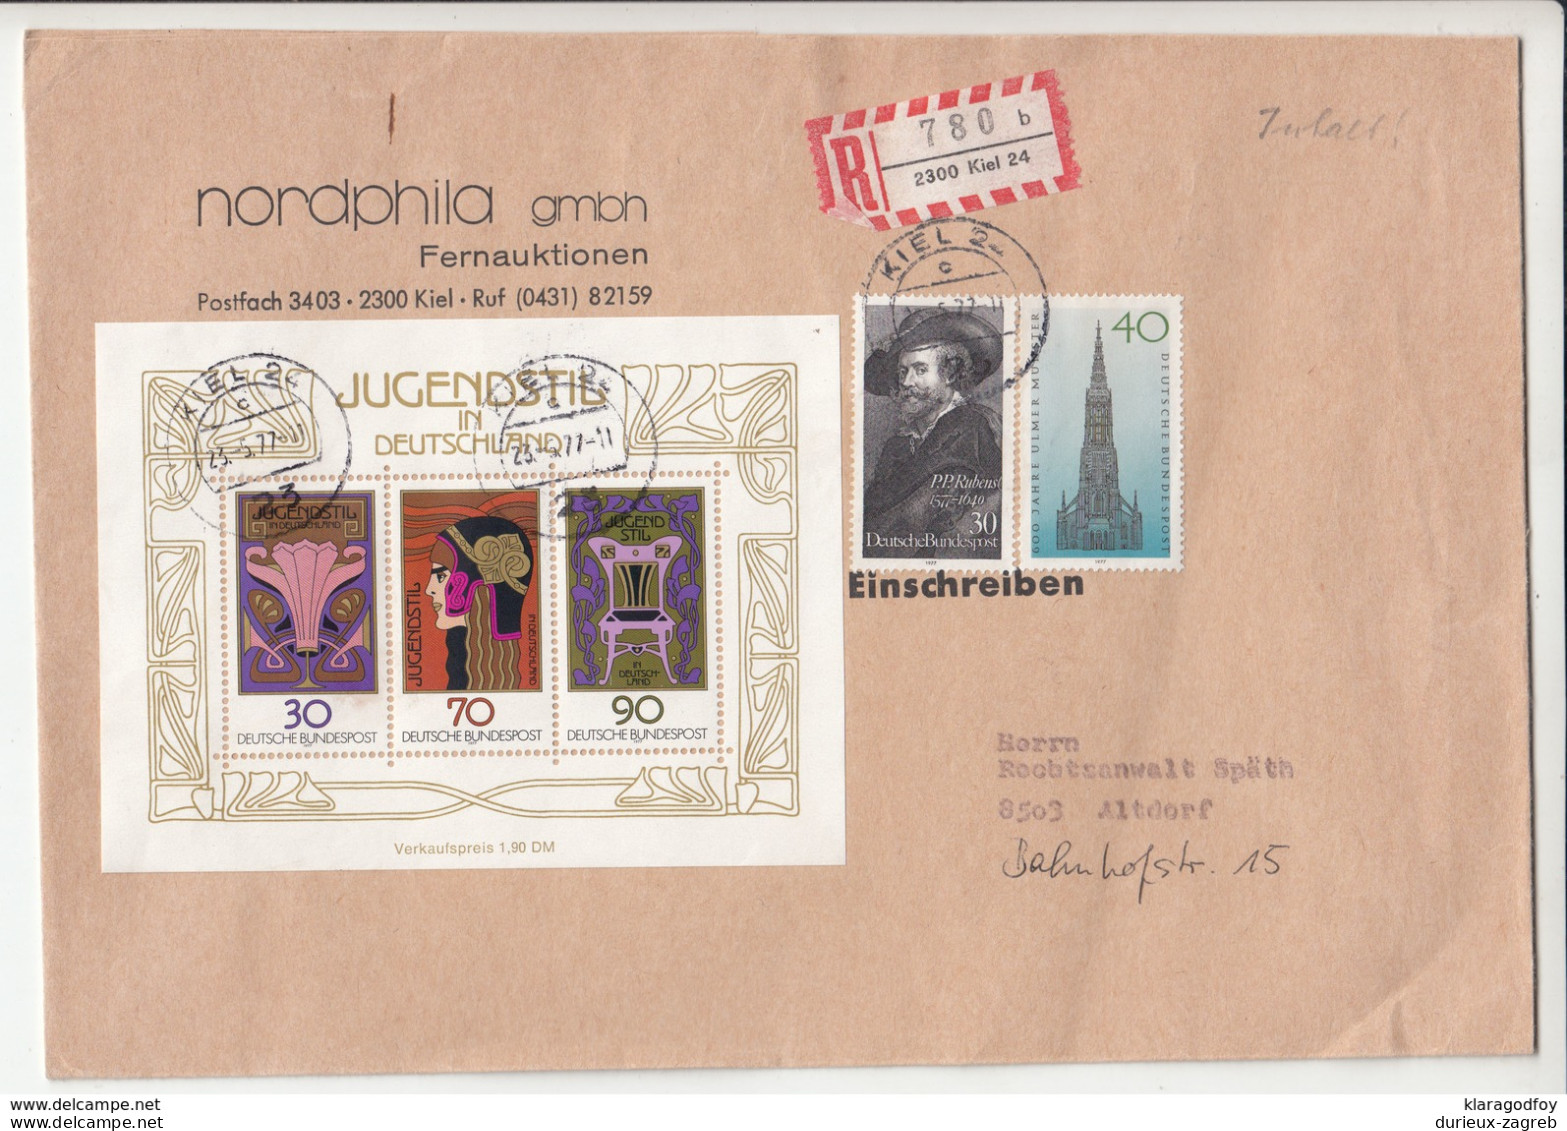 Germany, Jugendstil Souvernir Sheet On Nordhphila Letter Cover Registered Travelled 1977 Kiel Pmk B190101 - Briefe U. Dokumente